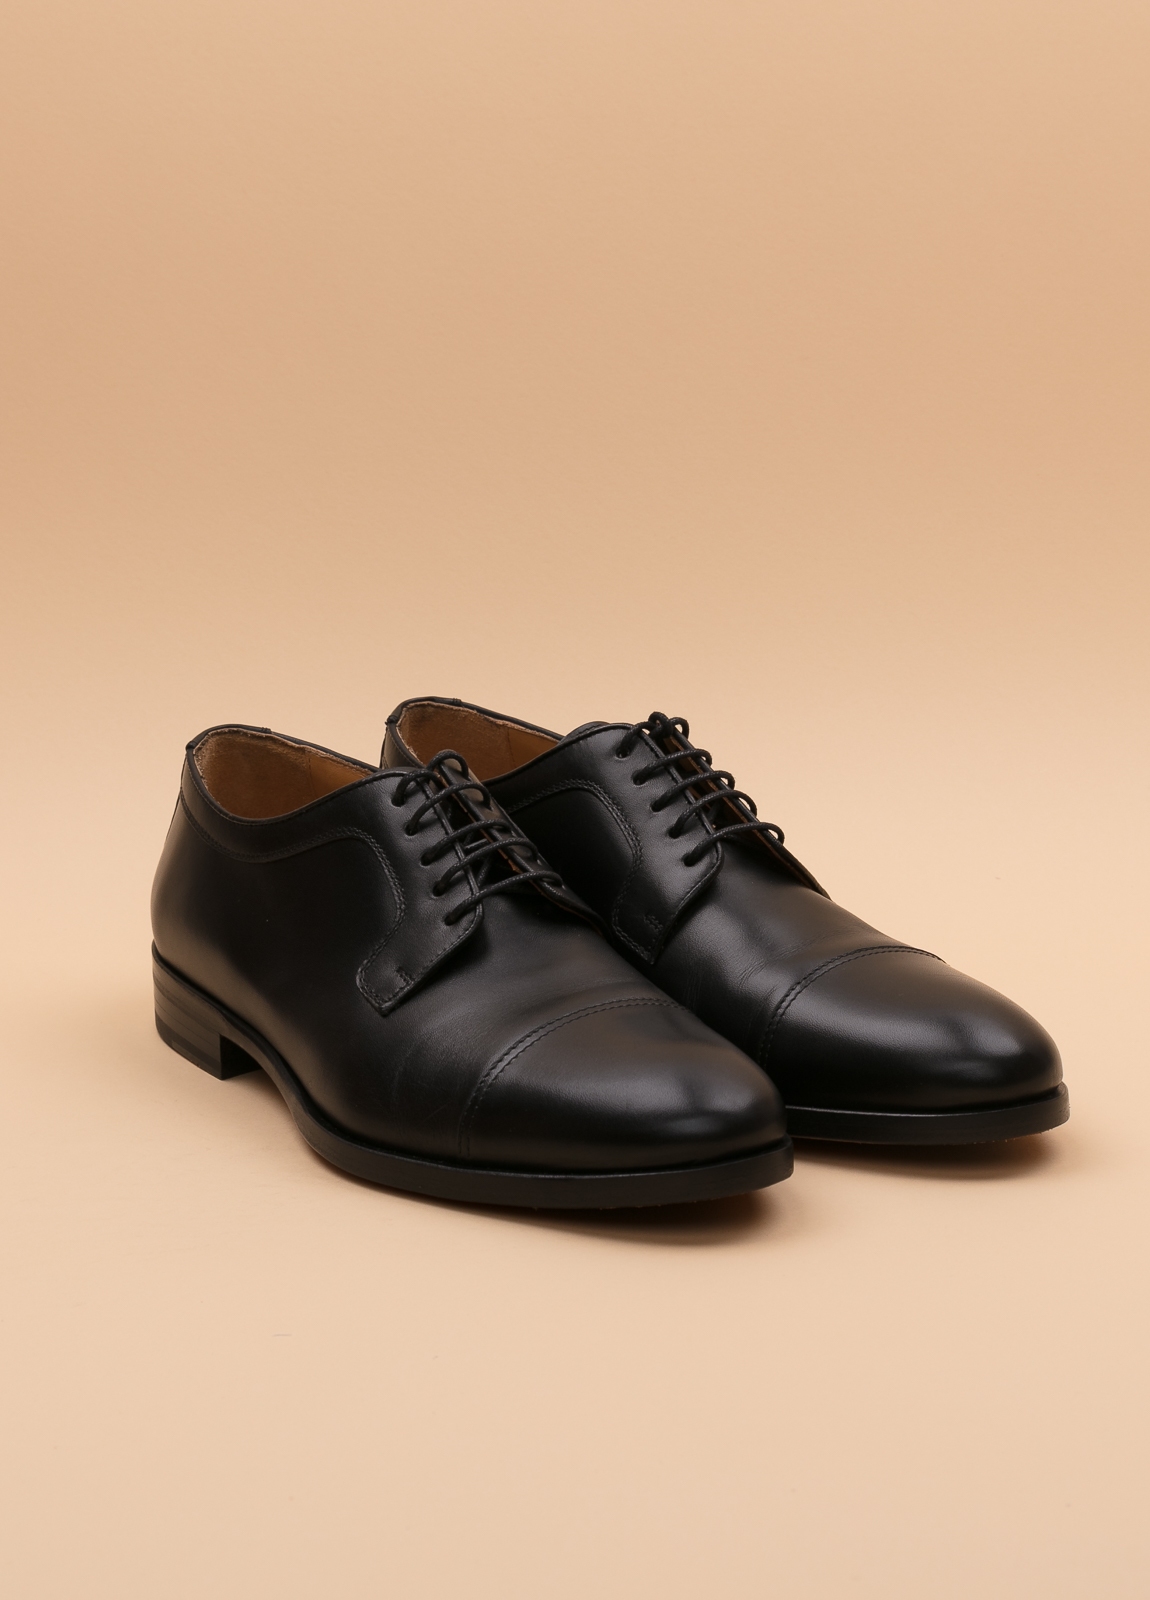 Zapato Formal Wear FUREST COLECCIÓN negro - Ítem1